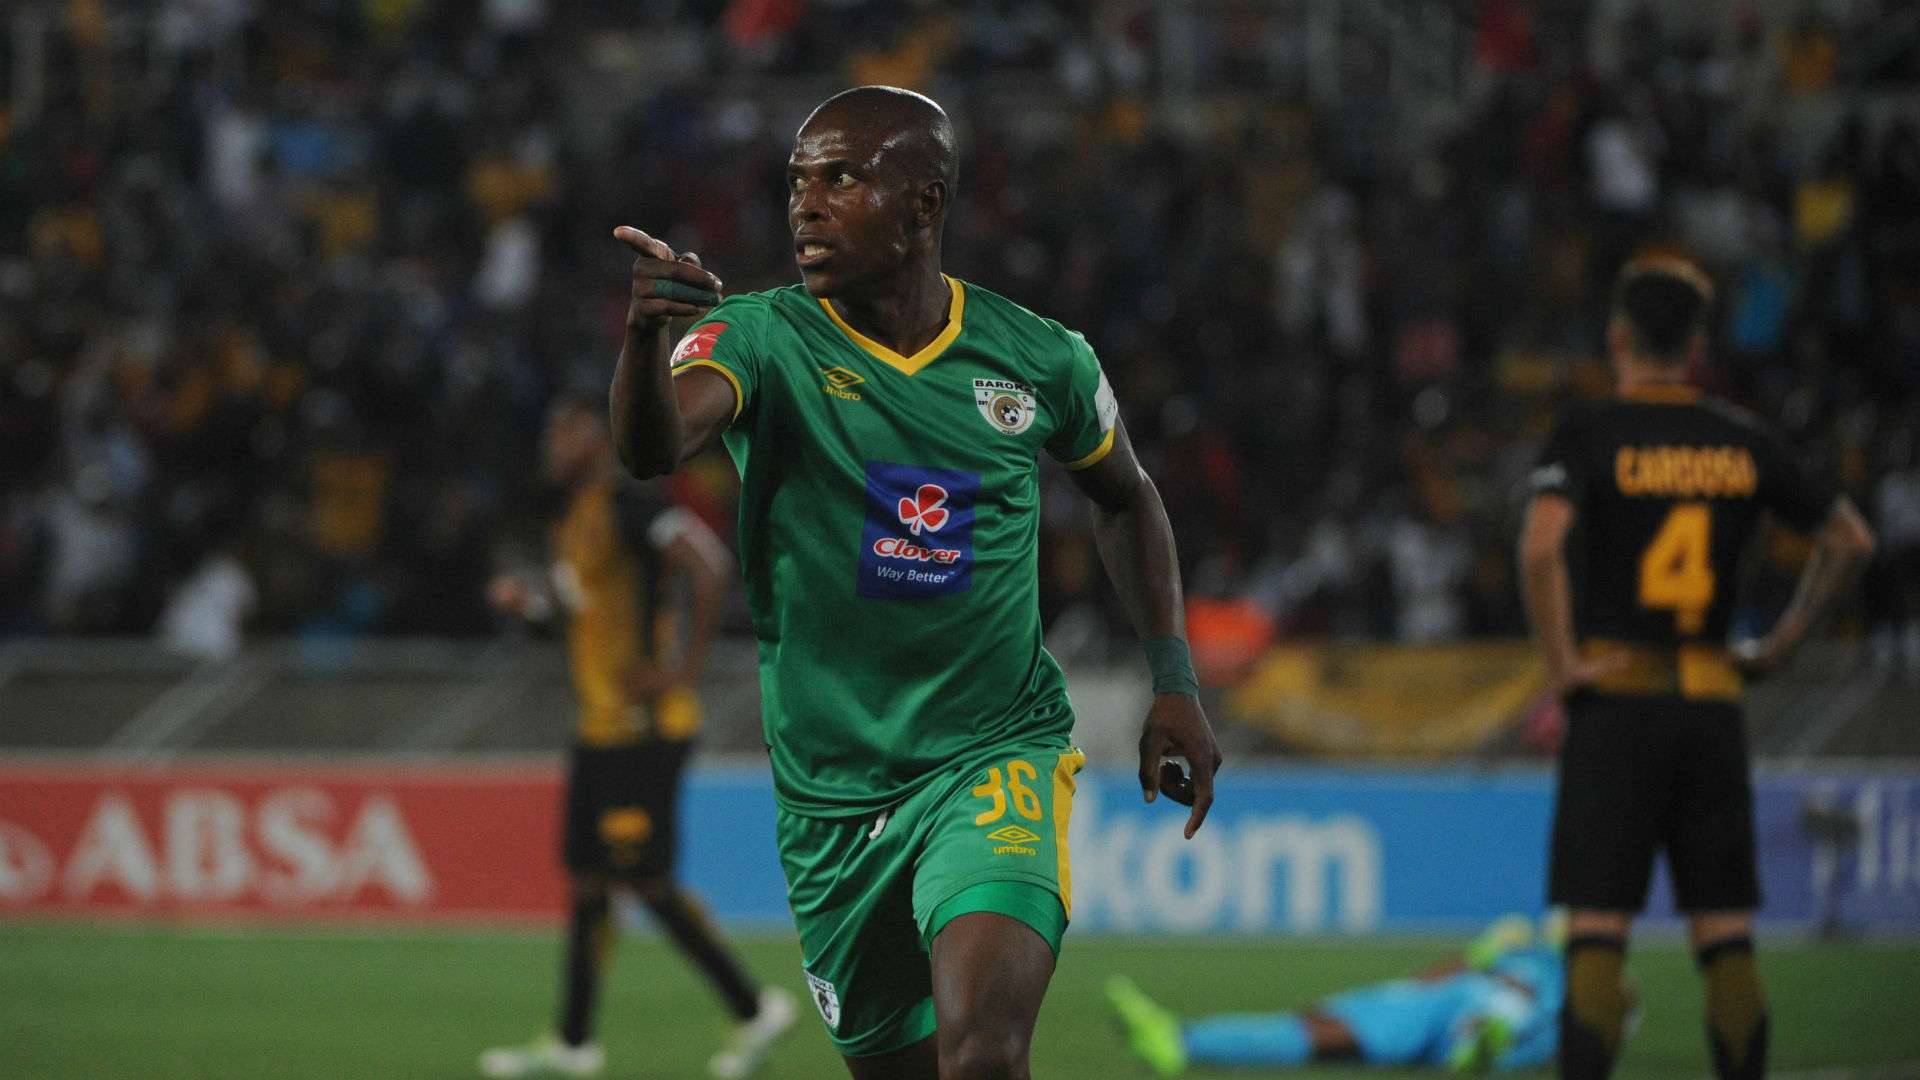 Mxolisi Kunene of Baroka FC